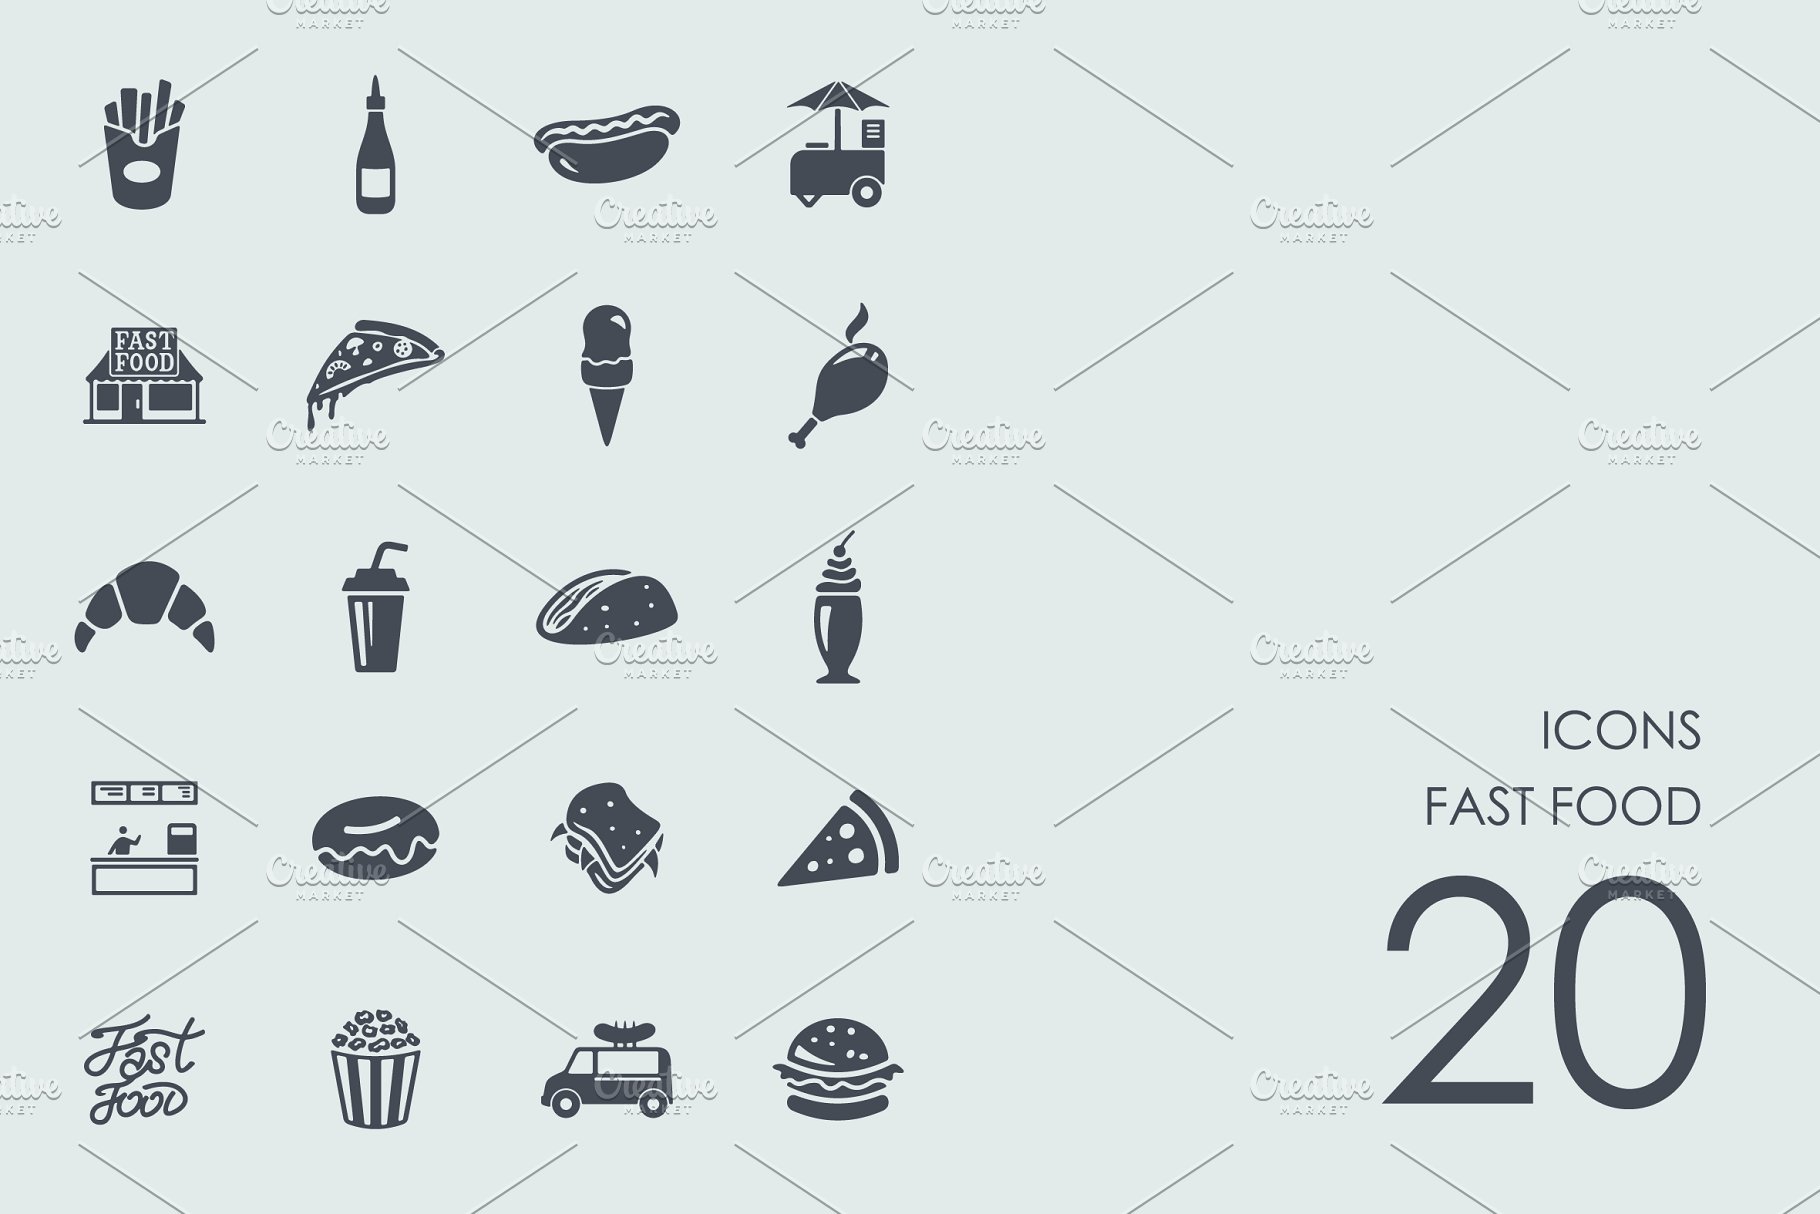 西式快餐主题图标 Fast food icons插图(1)